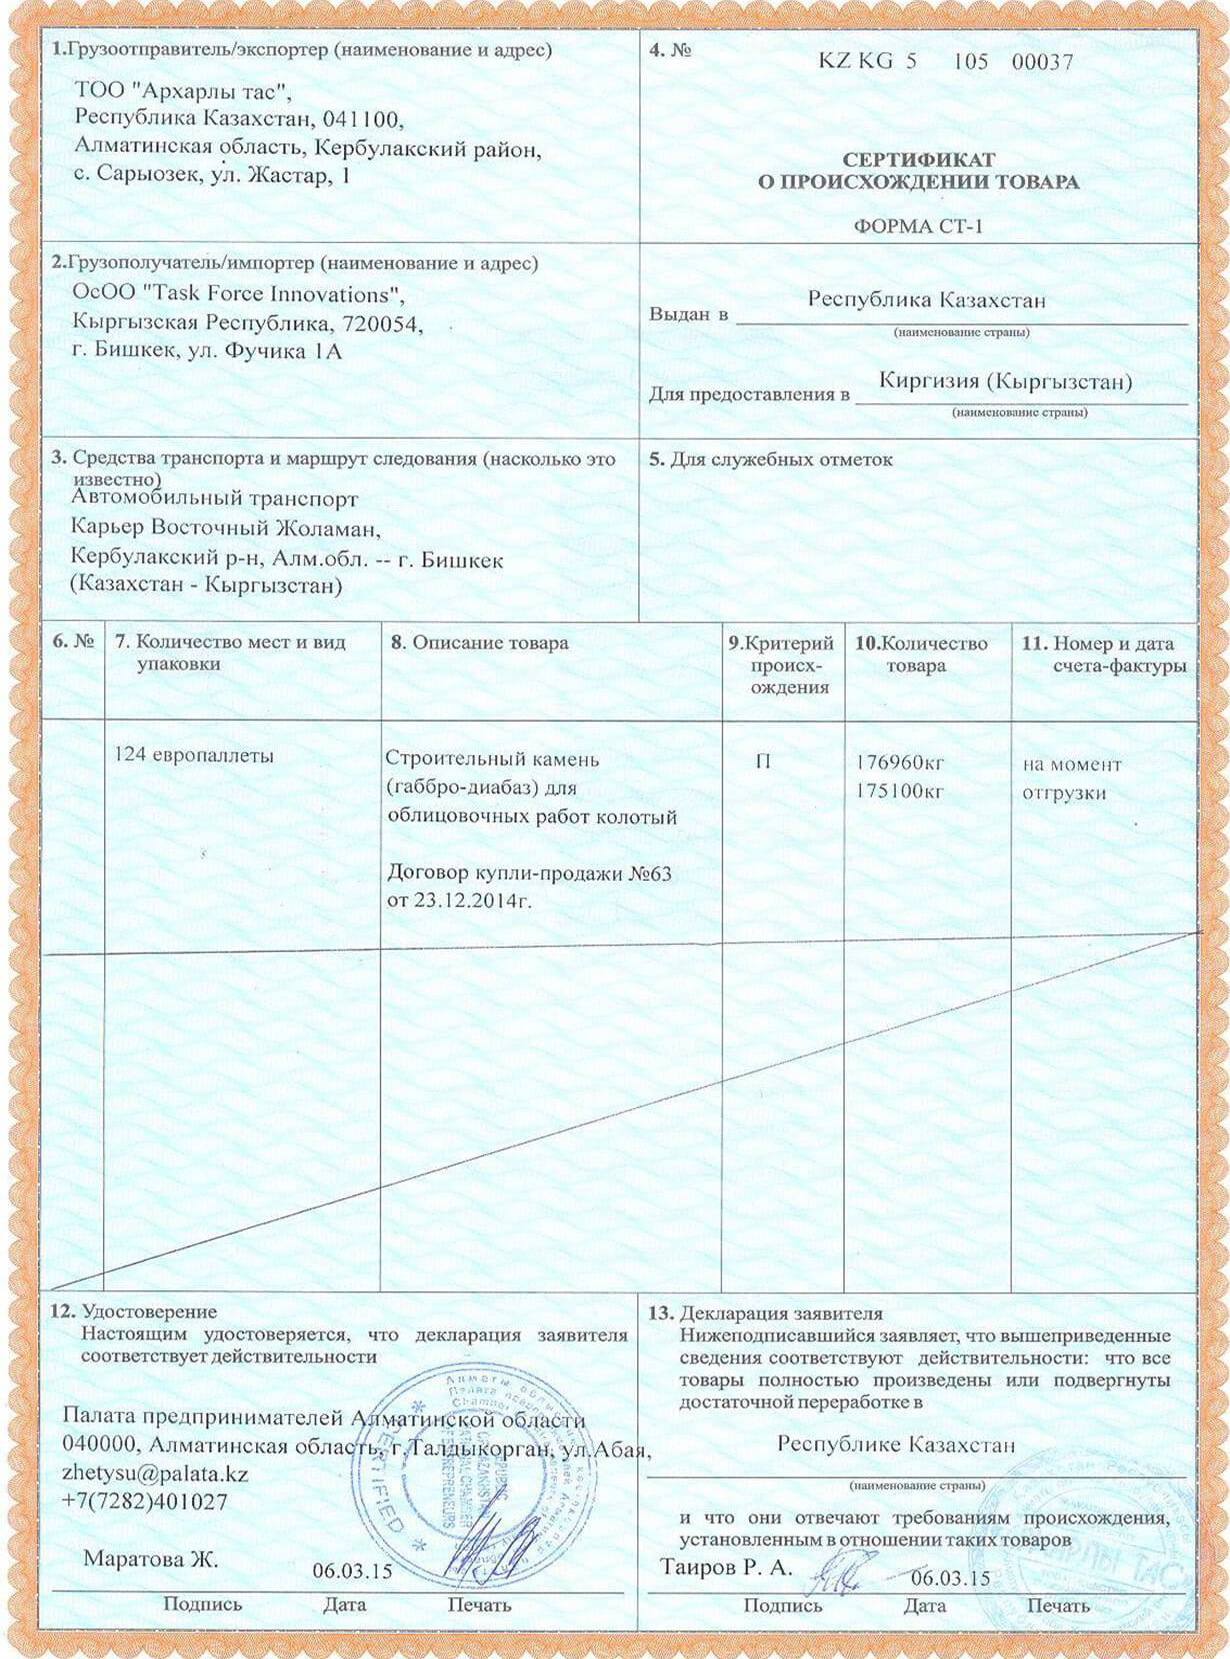 Сертификат о происхождении товара